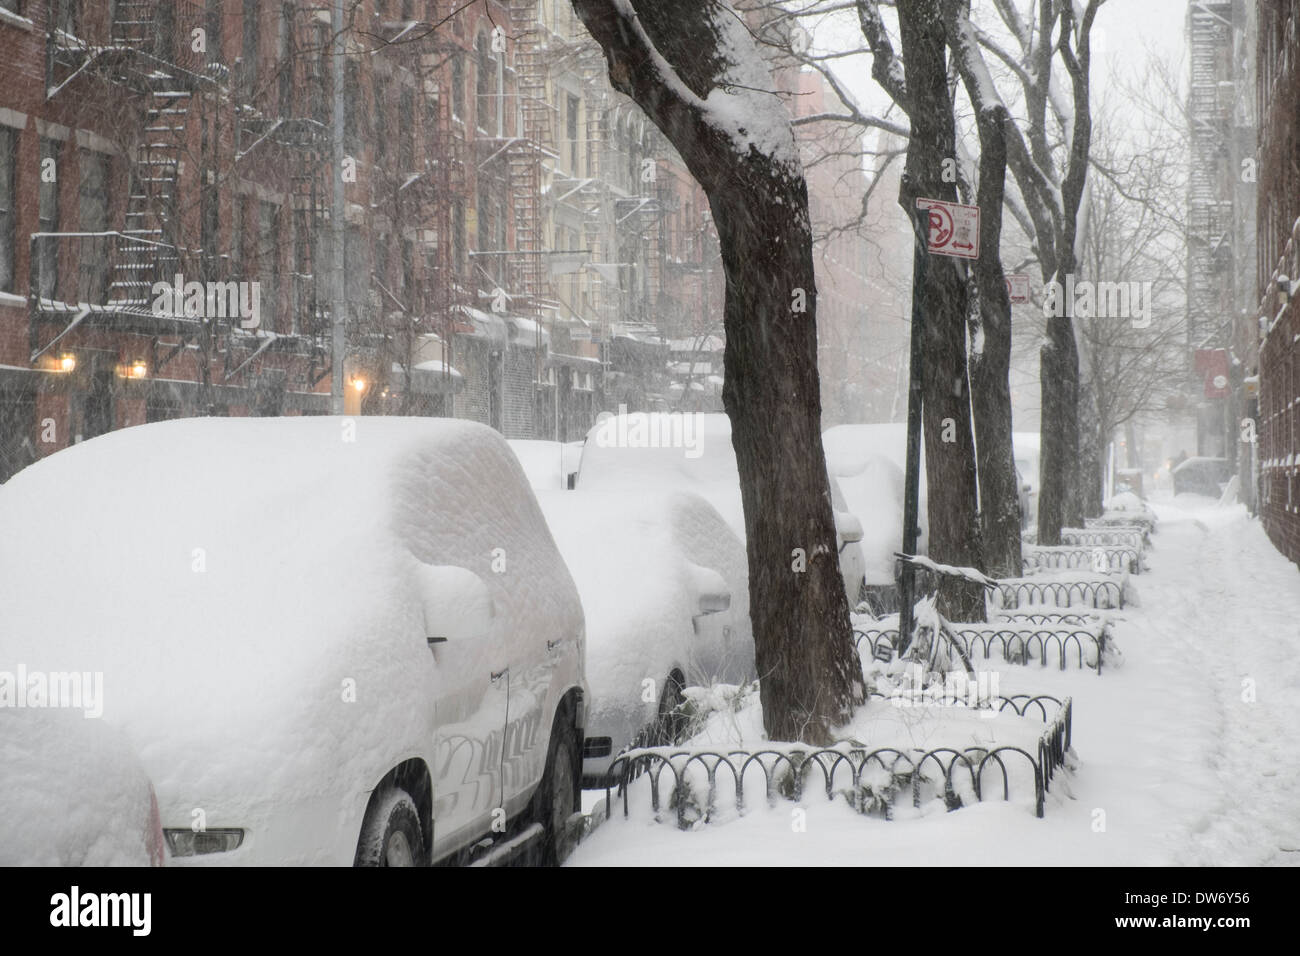 Los coches aparcados cubiertos de nieve en la Ciudad de Nueva York después de fuertes nevadas Foto de stock